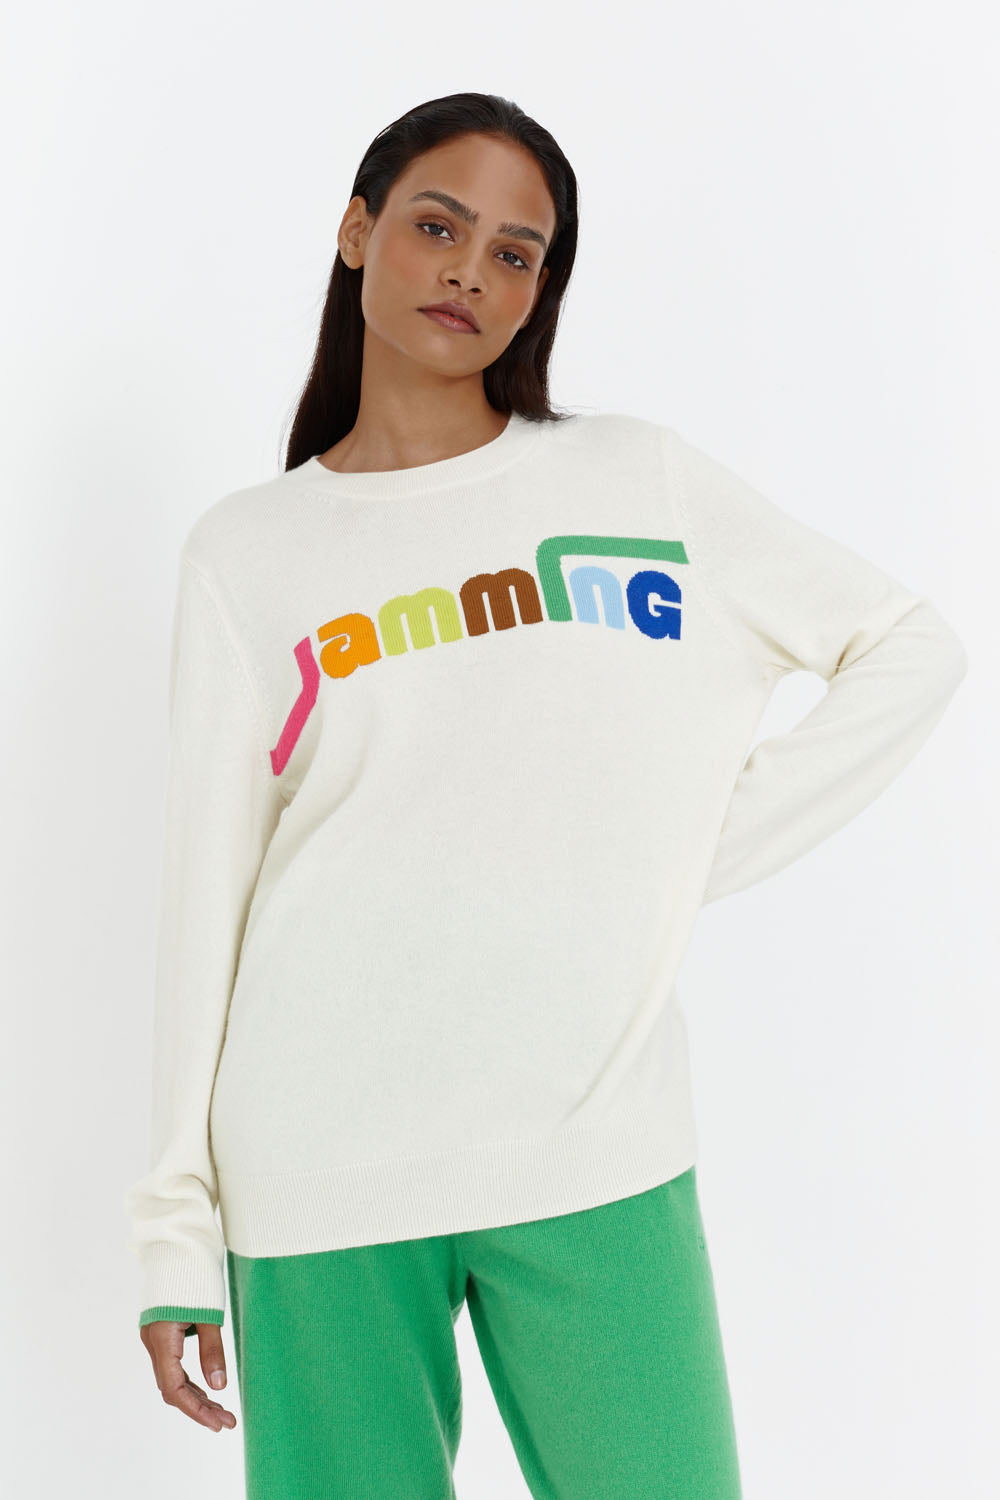 Cream Wool-Cashmere Jamming Sweater